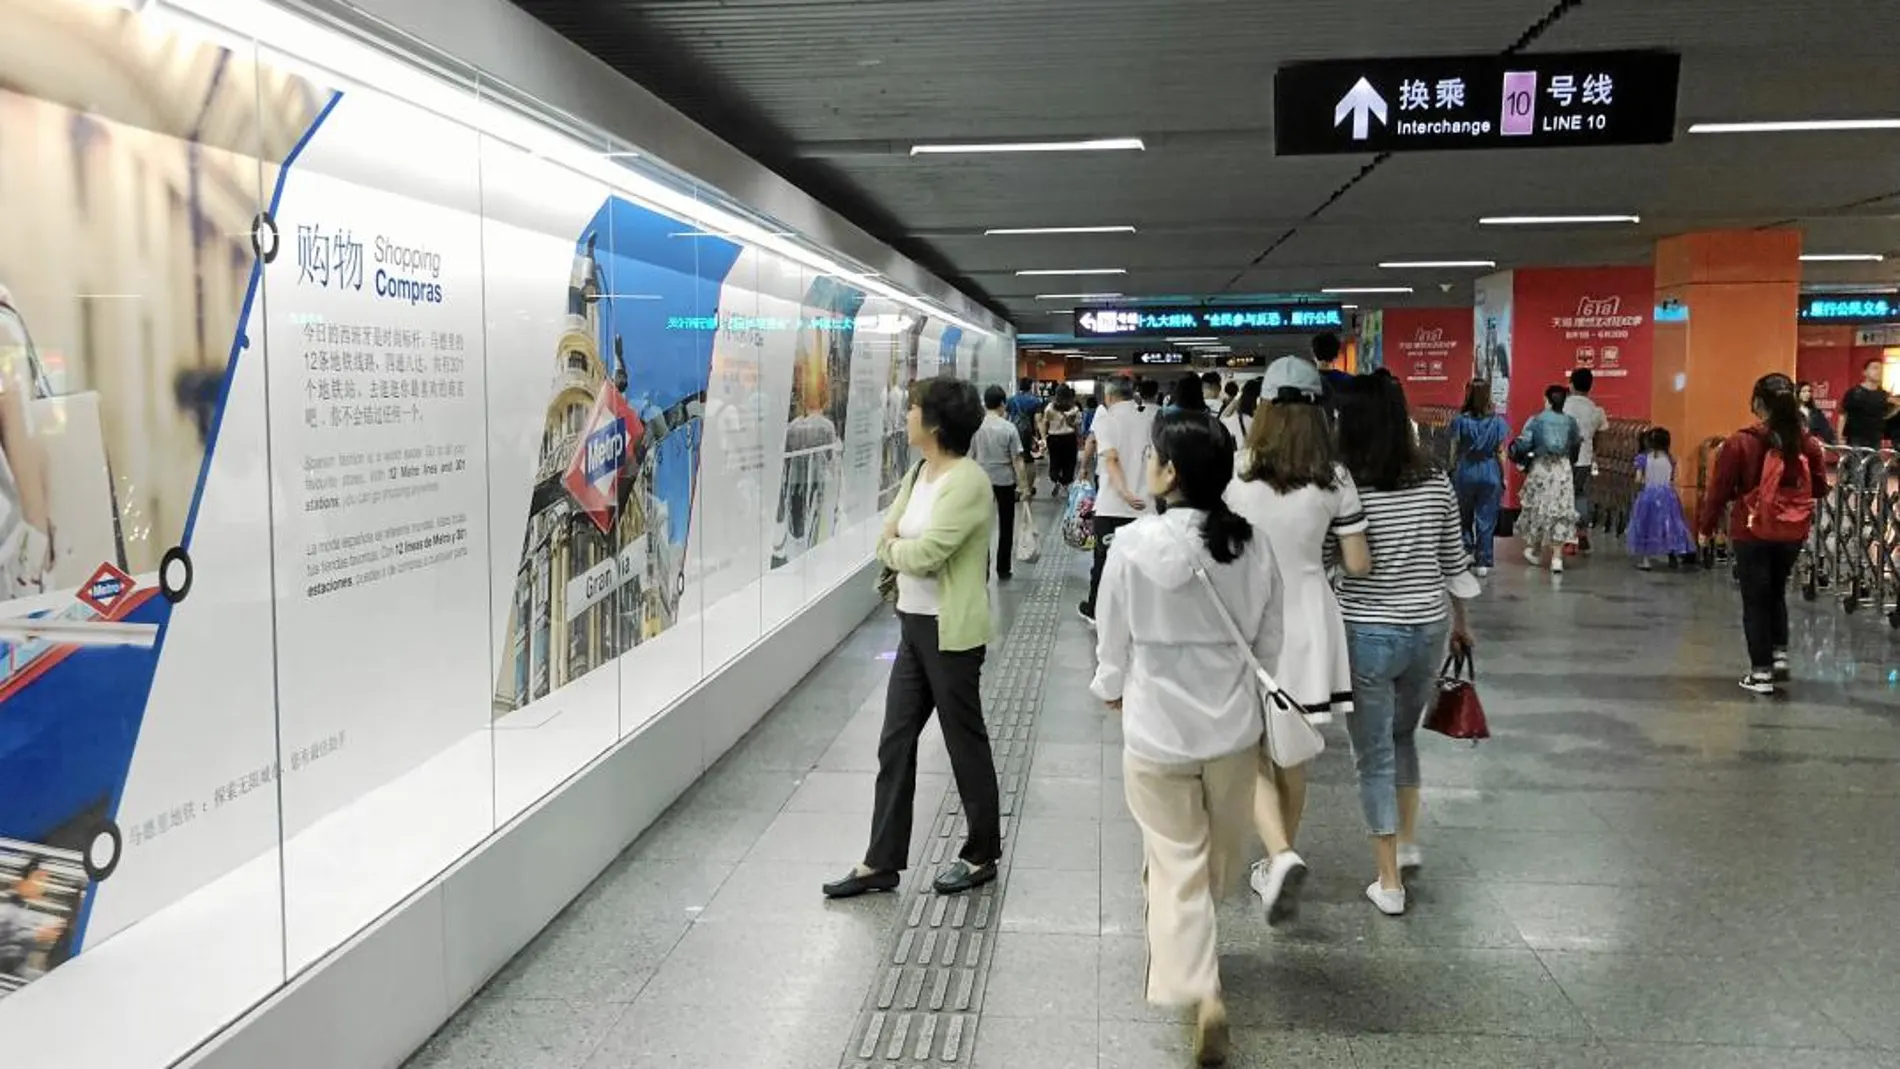 «Tu mejor cómplice para una ciudad infinita», reza uno de los textos que acompaña a la muestra fotográfica expuesta en la estación East Nanjing Road de Shanghái desde primeros de junio